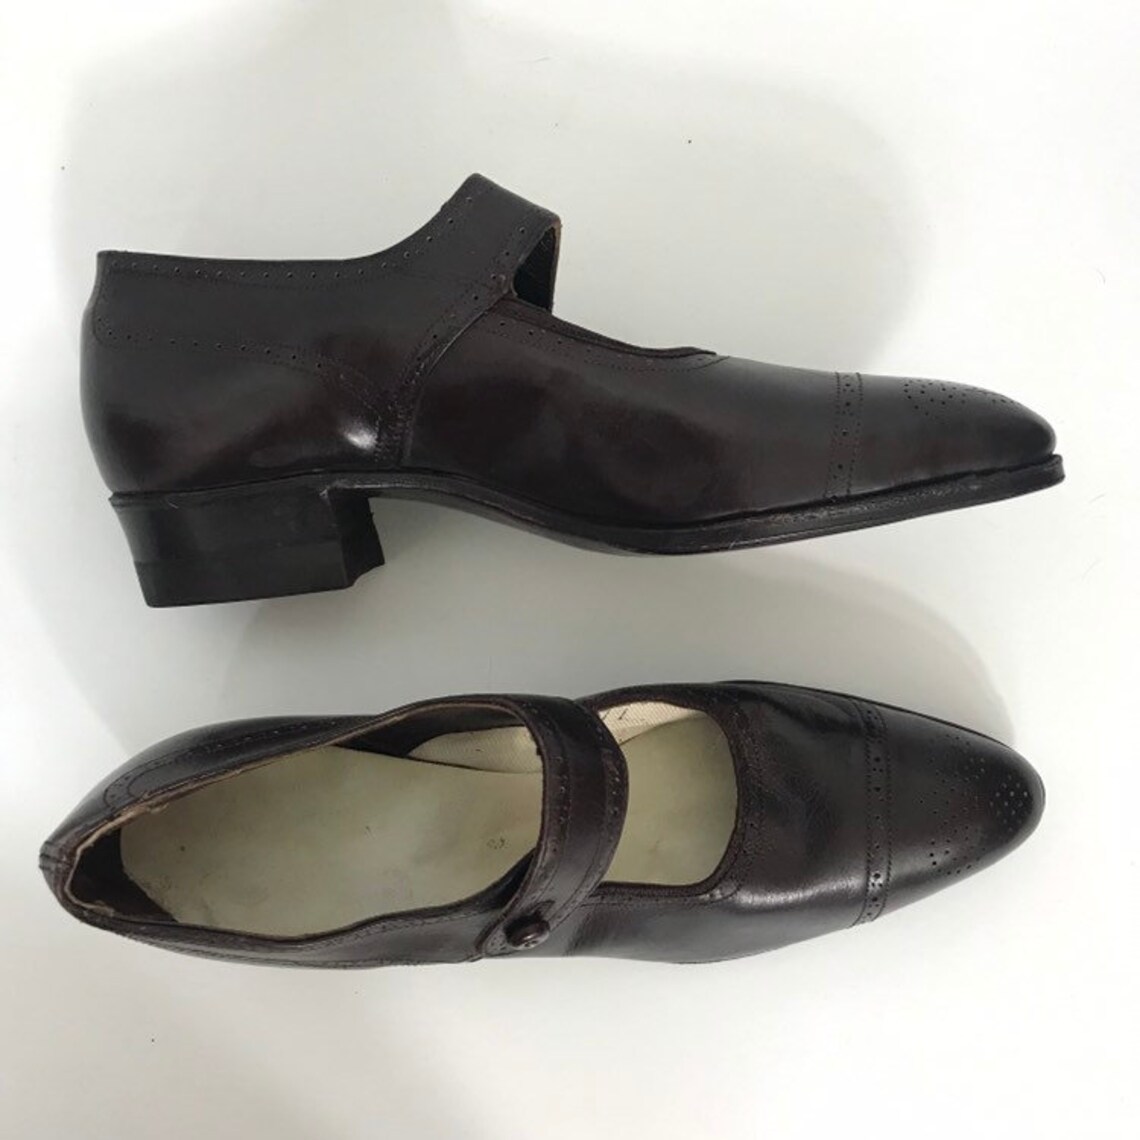 1920s brogue toe Mary Jane shoes | Etsy